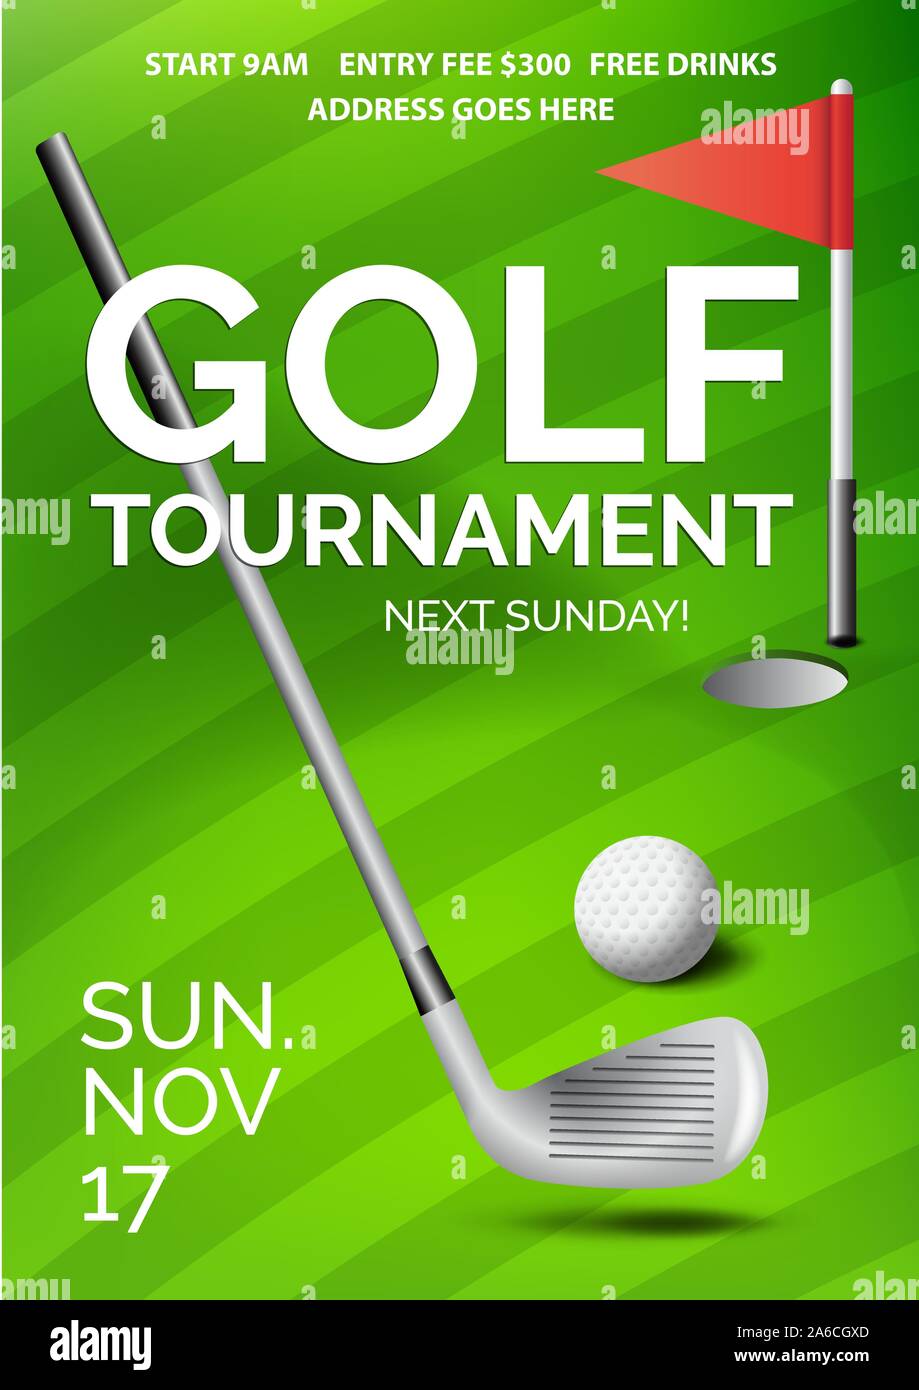 Golf Tournament Flyer  Golf tournament, Free golf, Golf